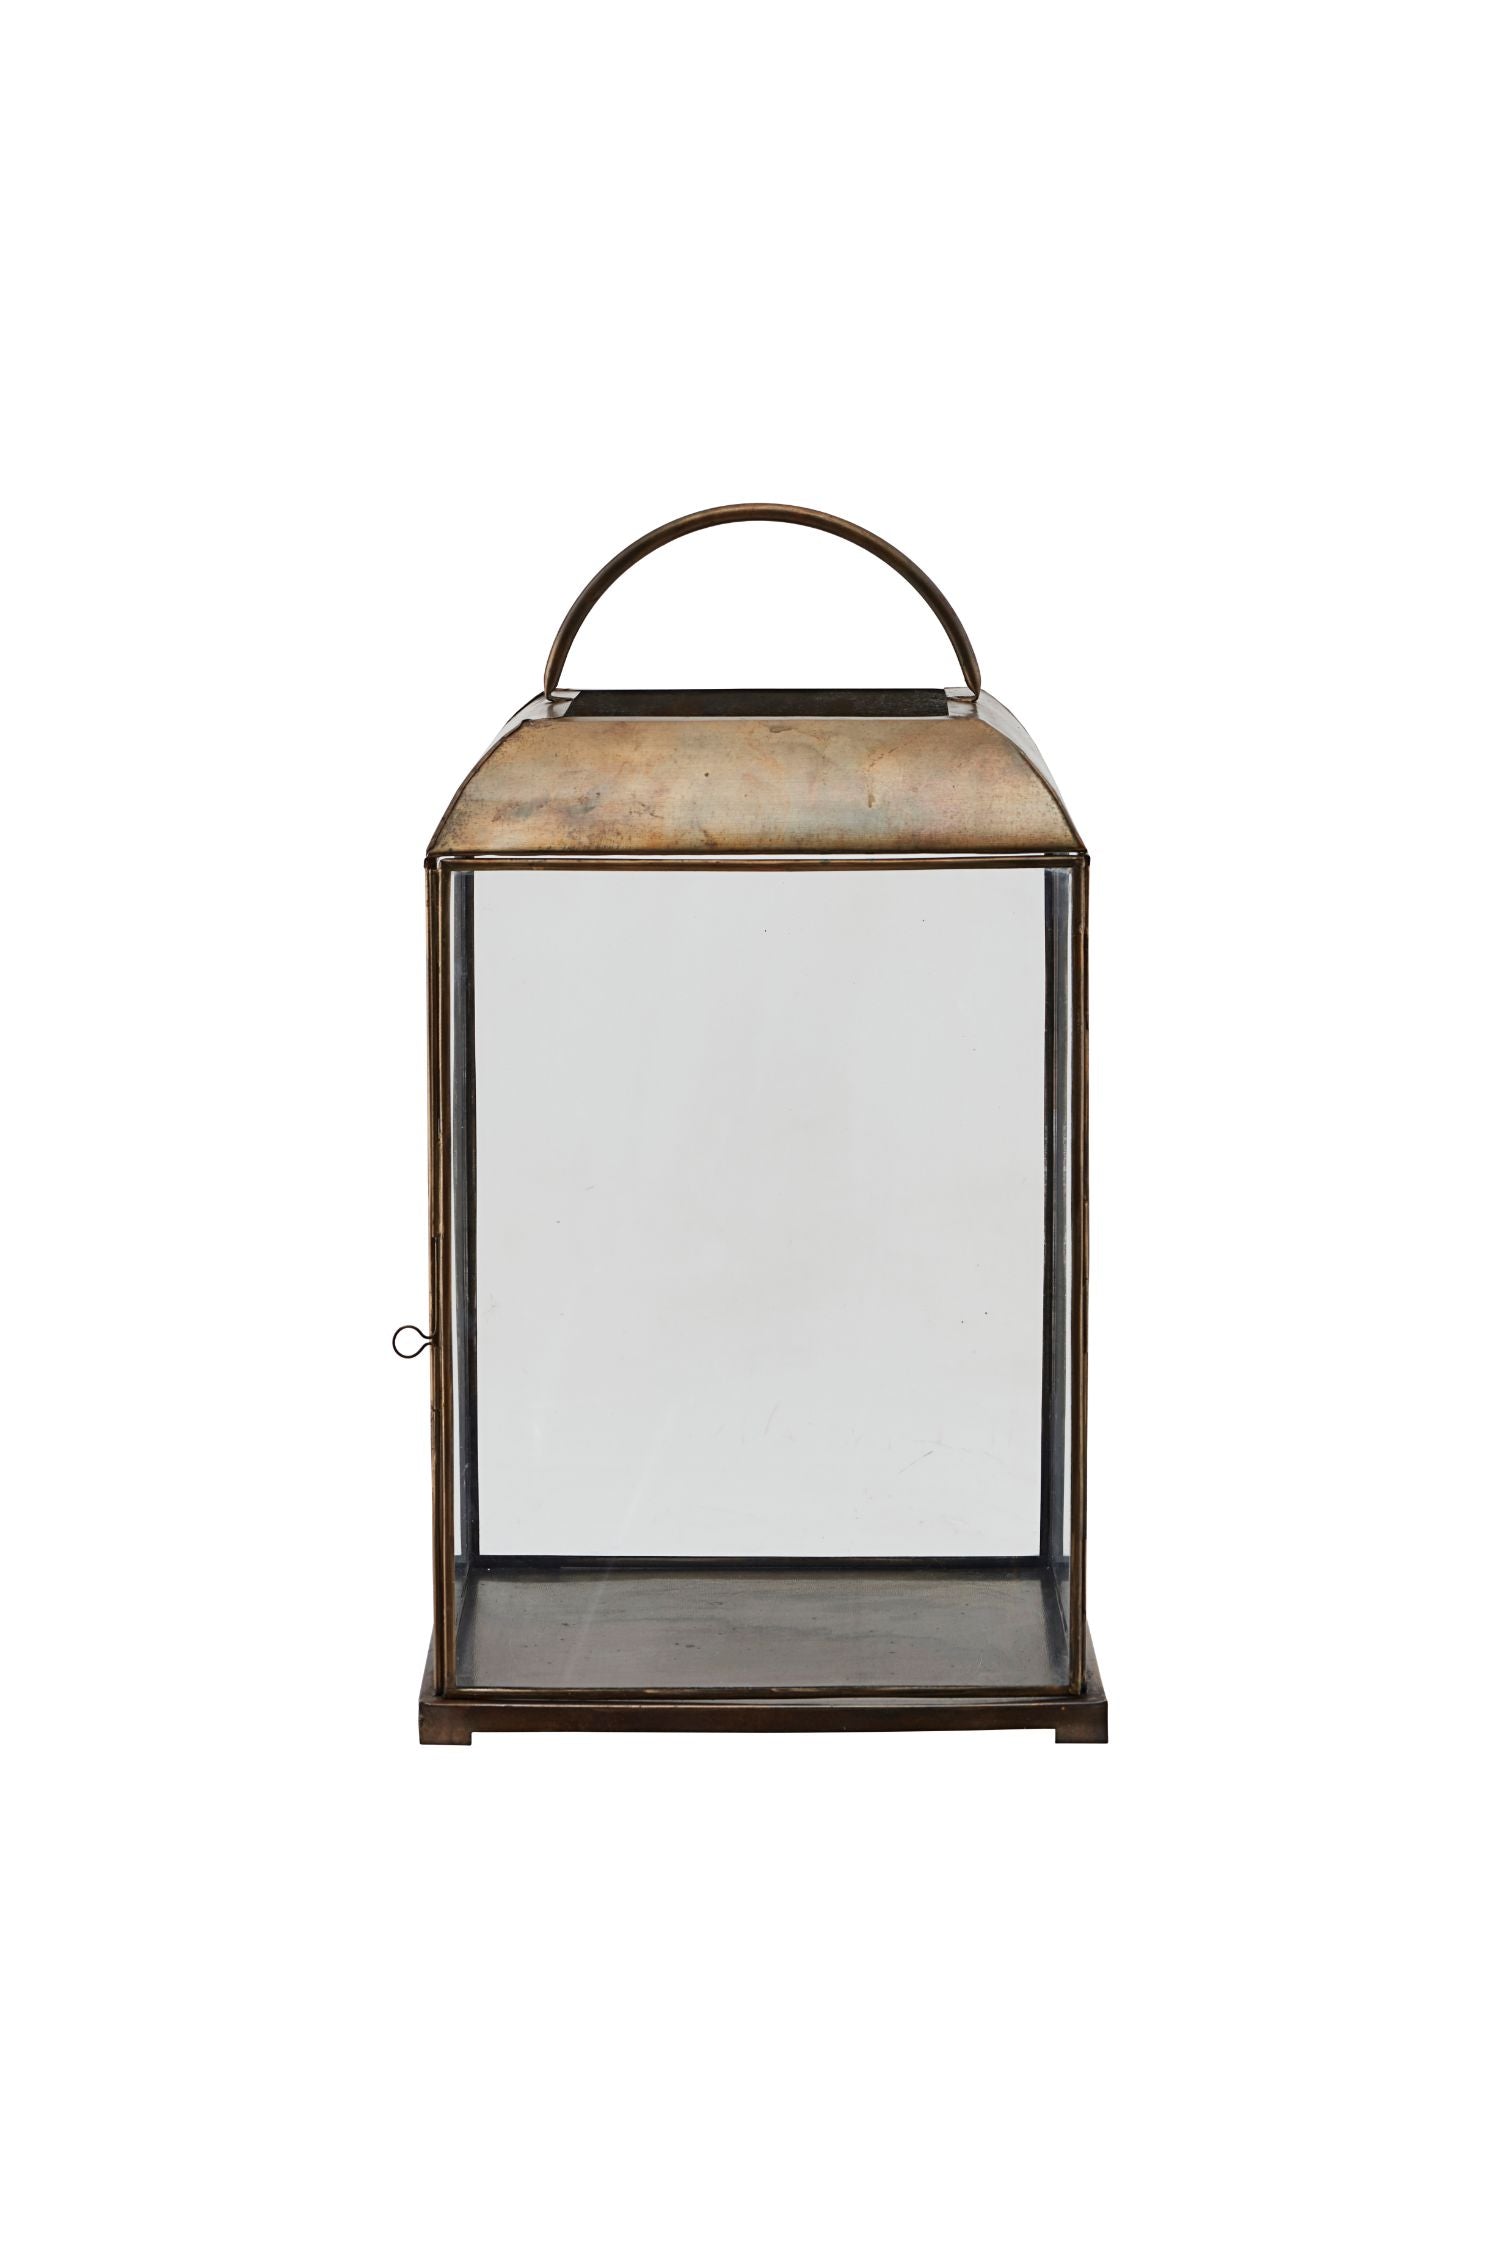 mandurai lantern 57cm h